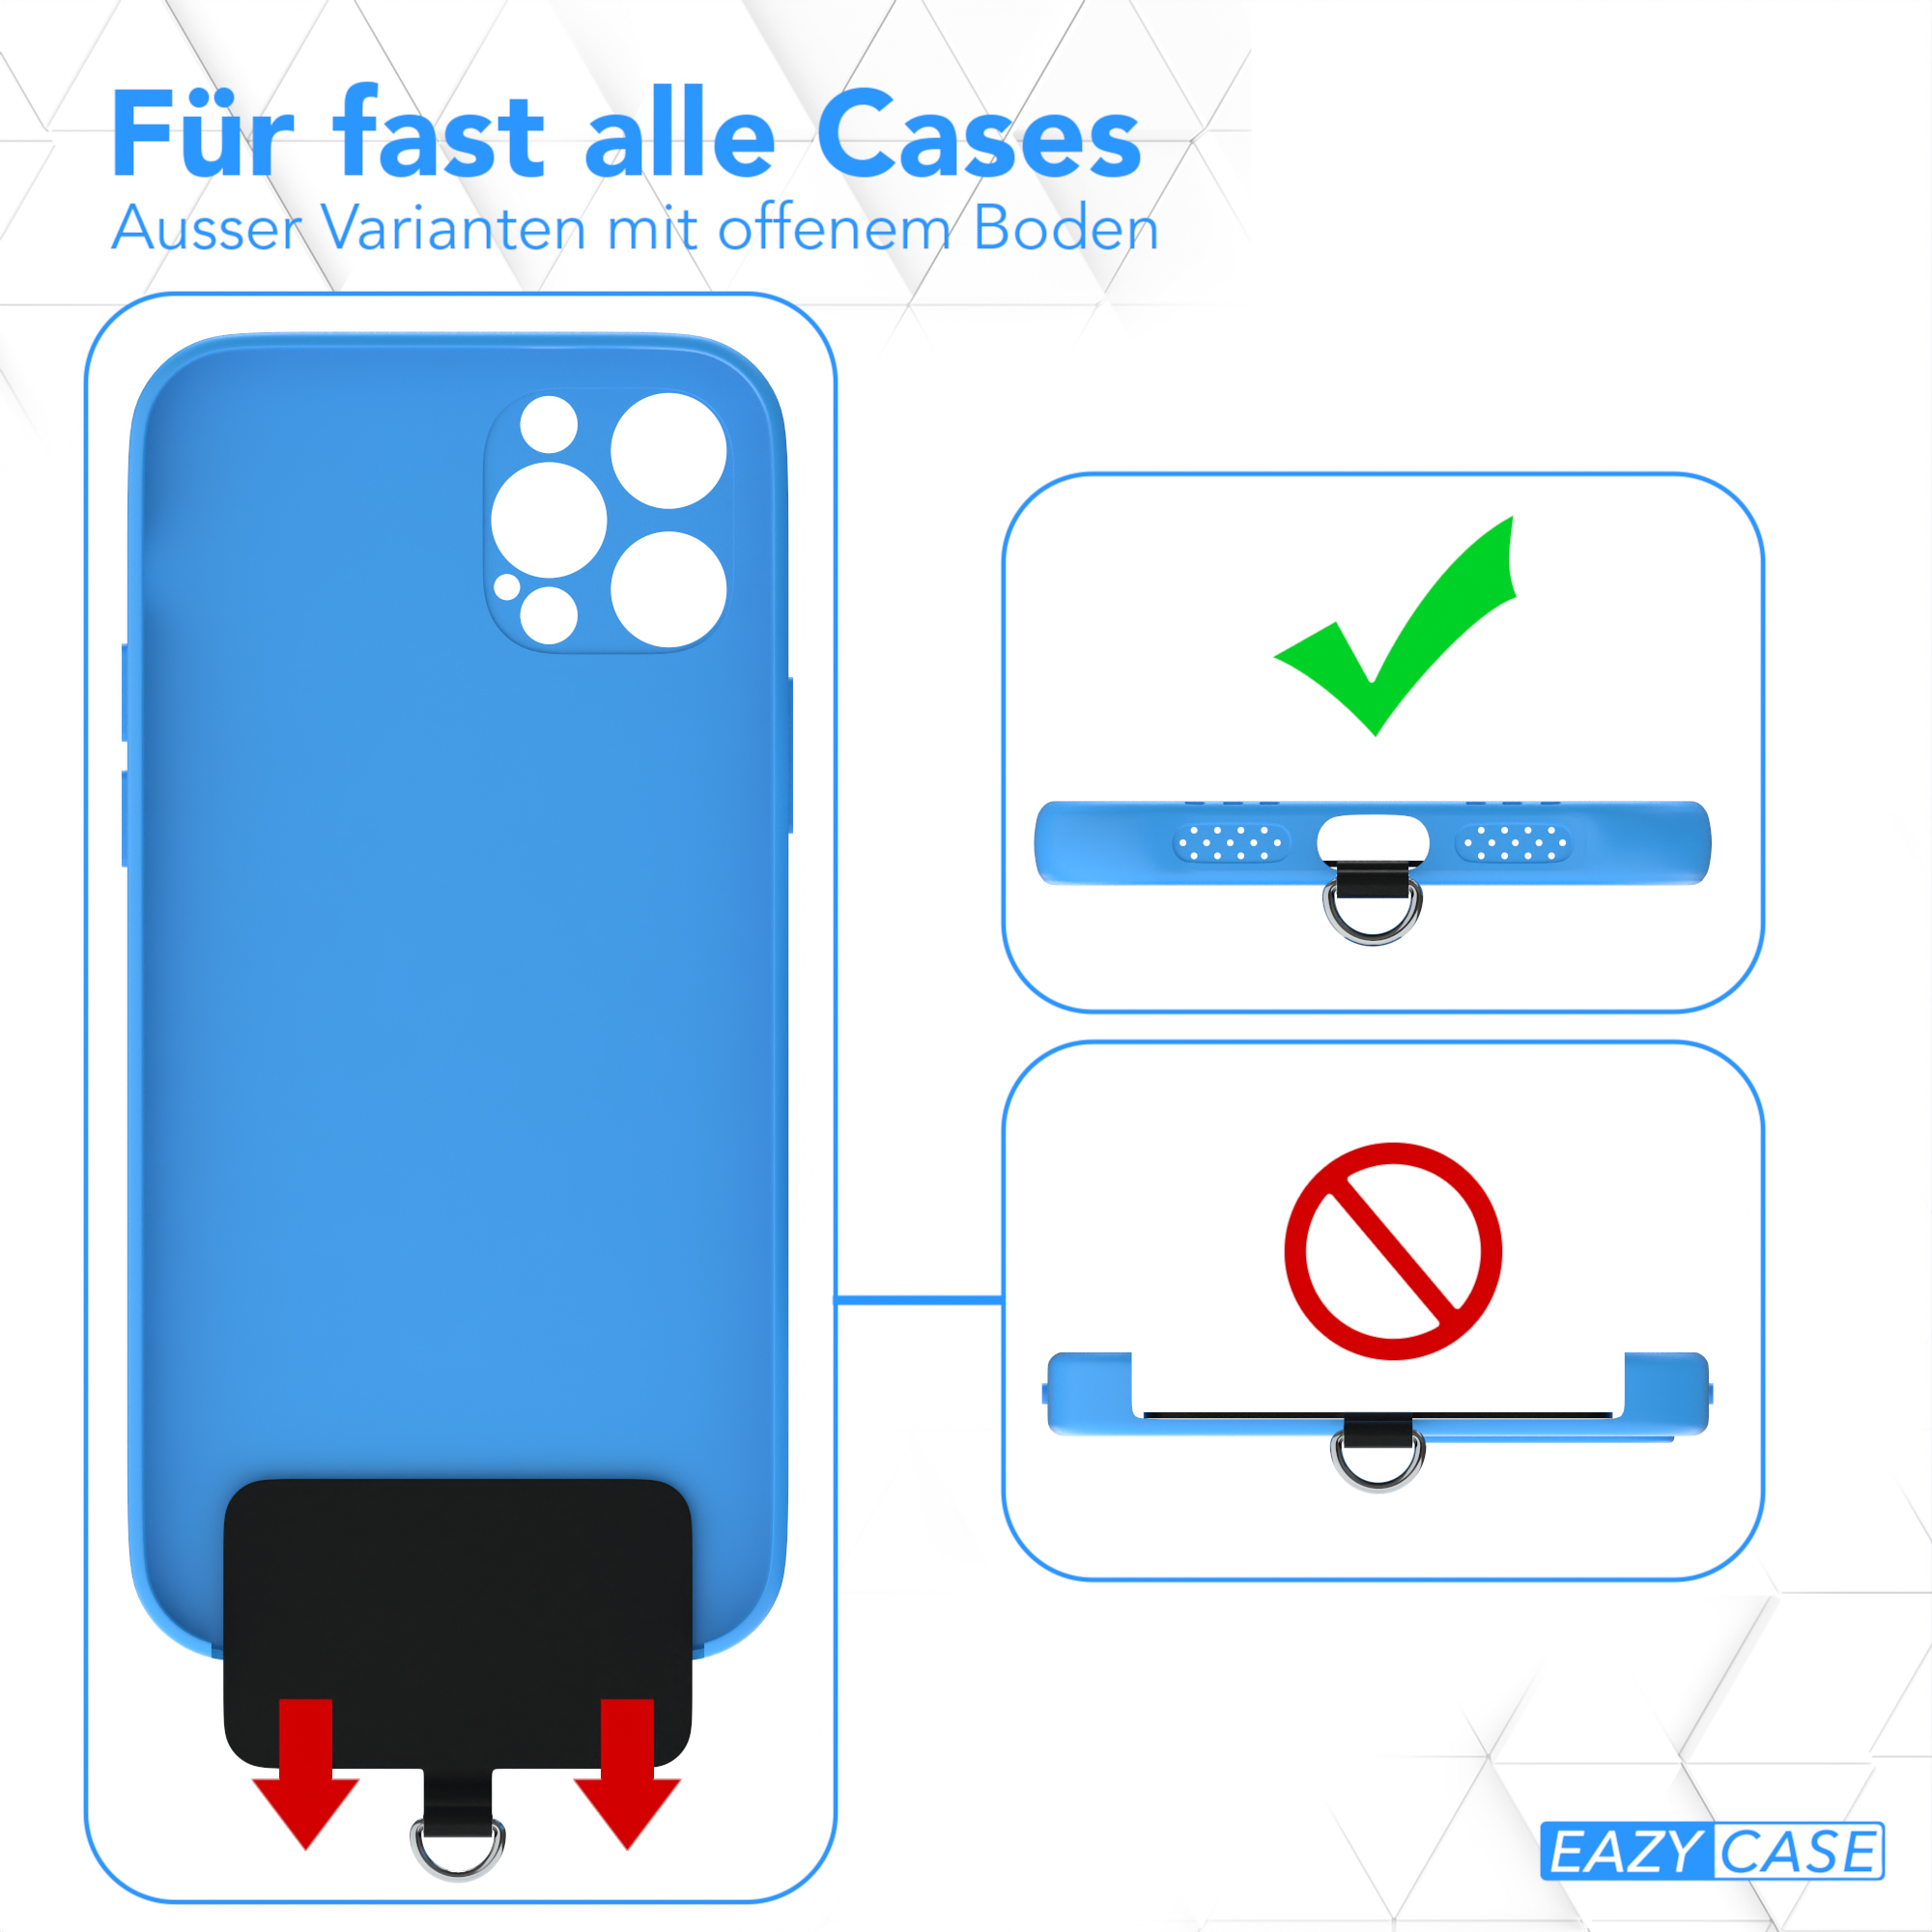 EAZY CASE Handyketten-Set für Smartphone nutzbar, alle Clip Modelle Schwarz Universal, Universal, Umhängetasche, Taupe